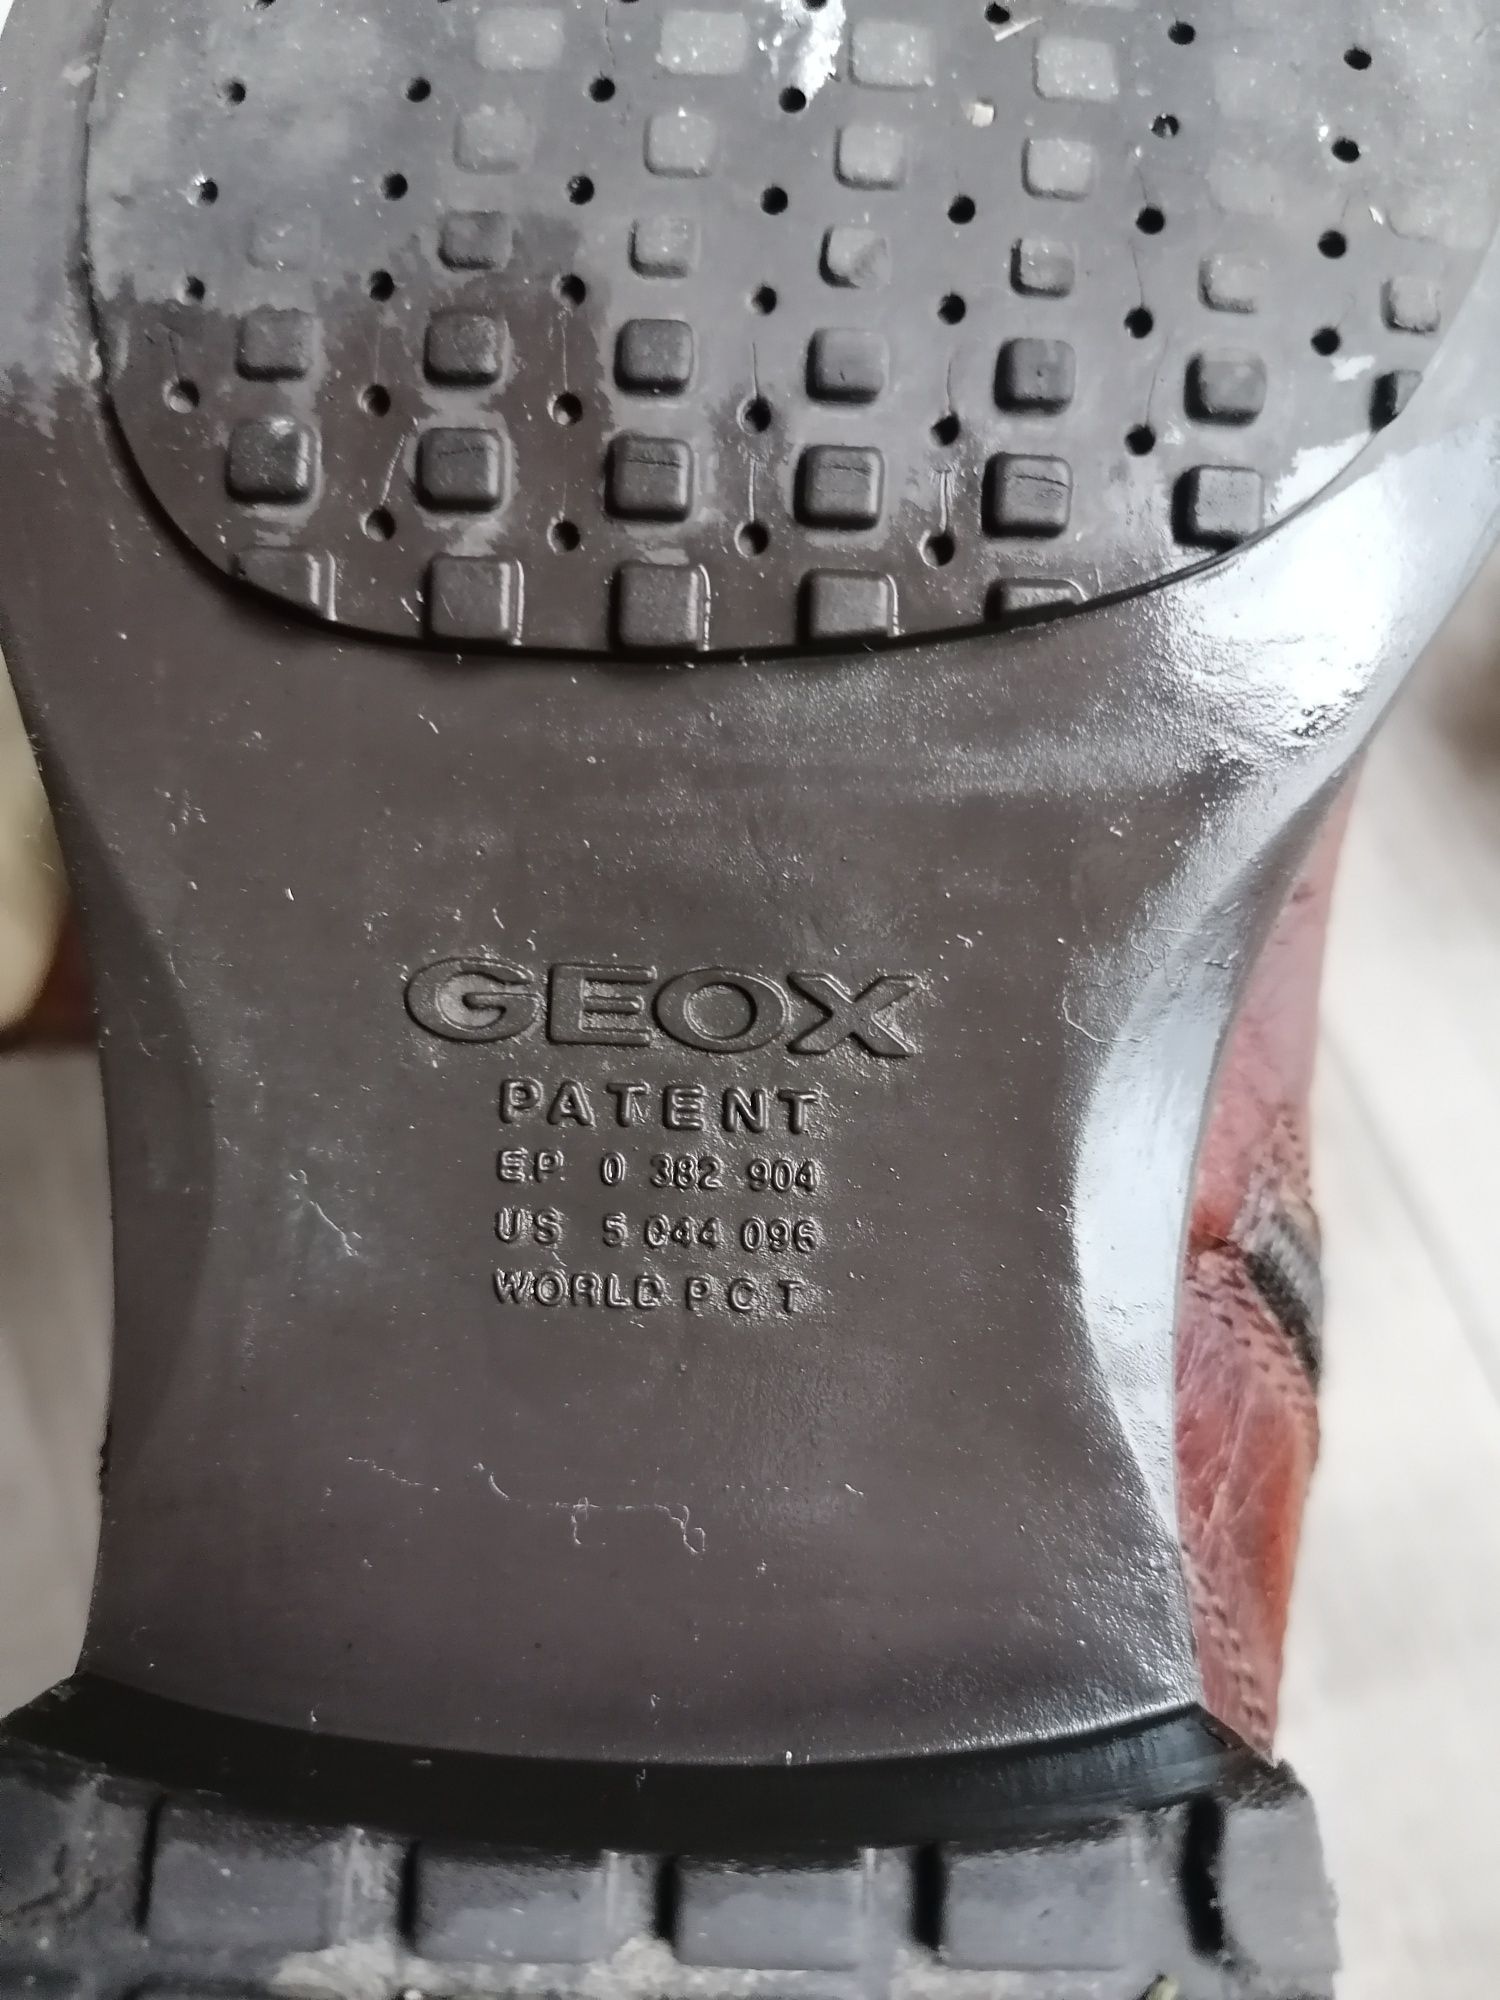 Geox Patent skórzane botki